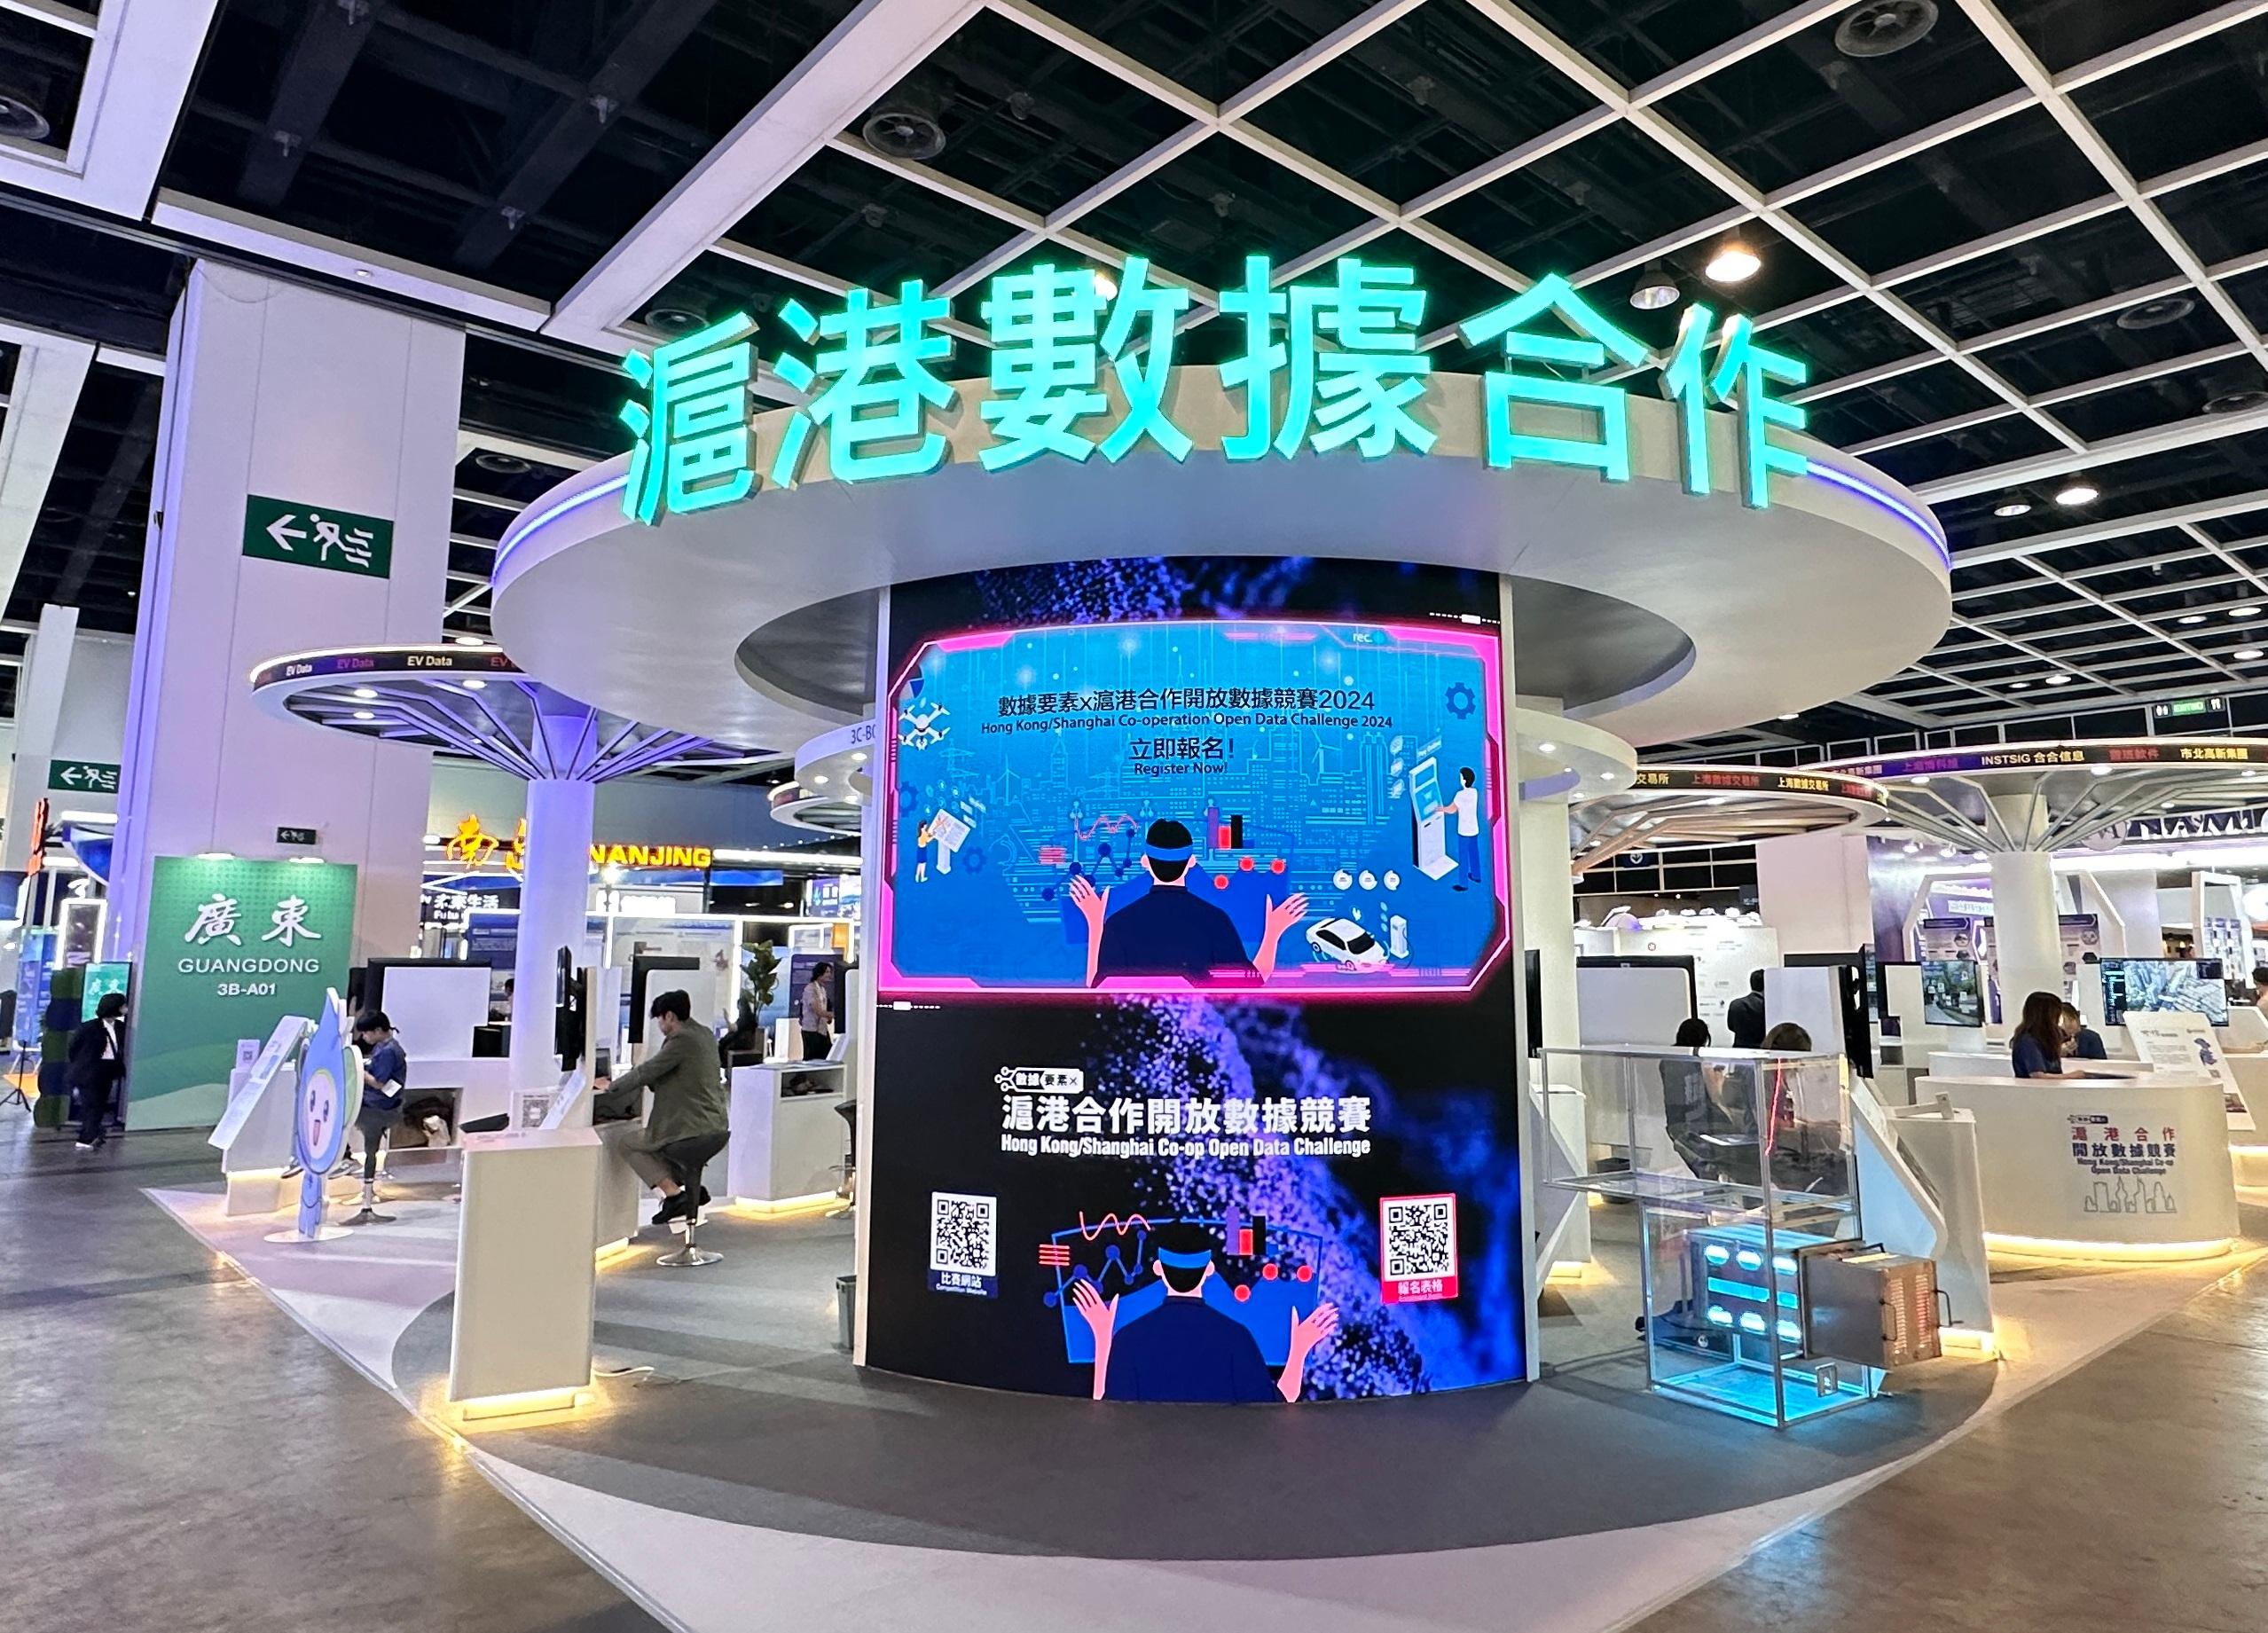 「数据要素x沪港合作开放数据竞赛2024」四月十三至十六日举行的香港国际创科展内设立沪港数据合作馆，展示两地开放数据应用解决方案。